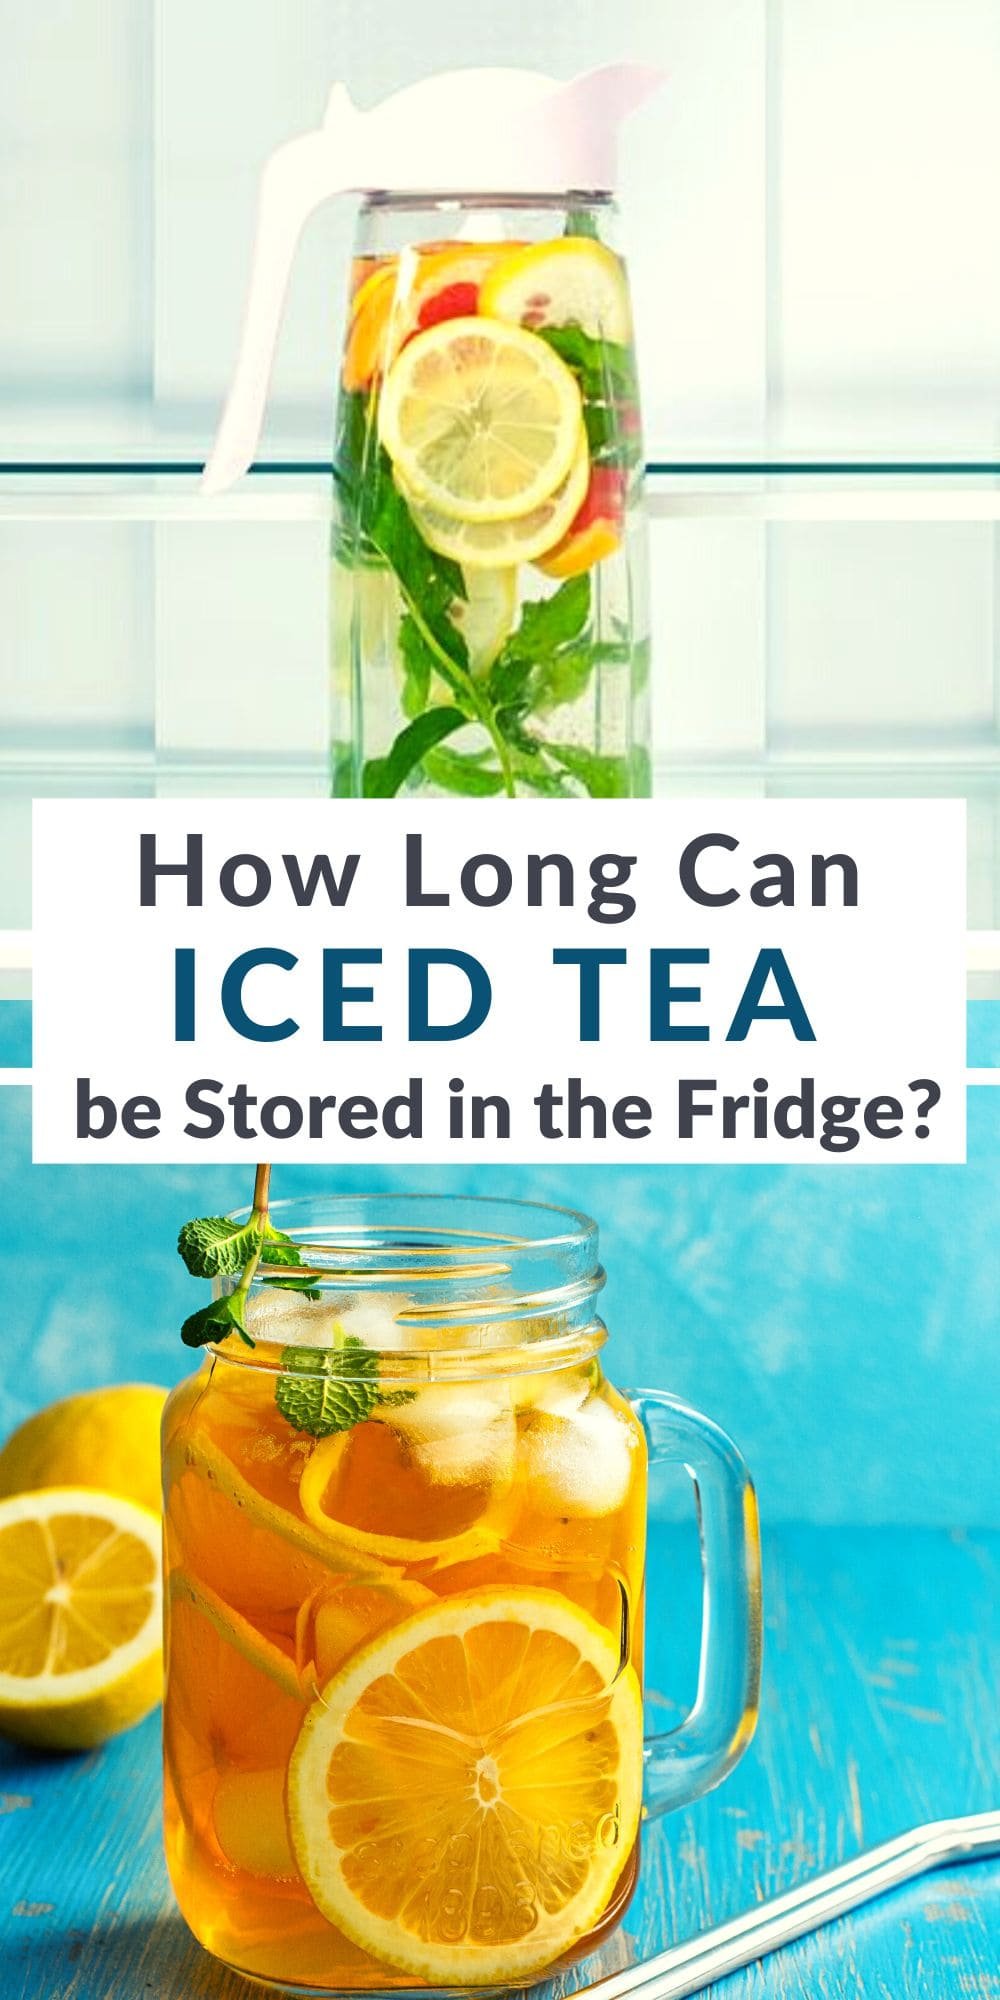 How Long Does Iced Tea Last in The Fridge